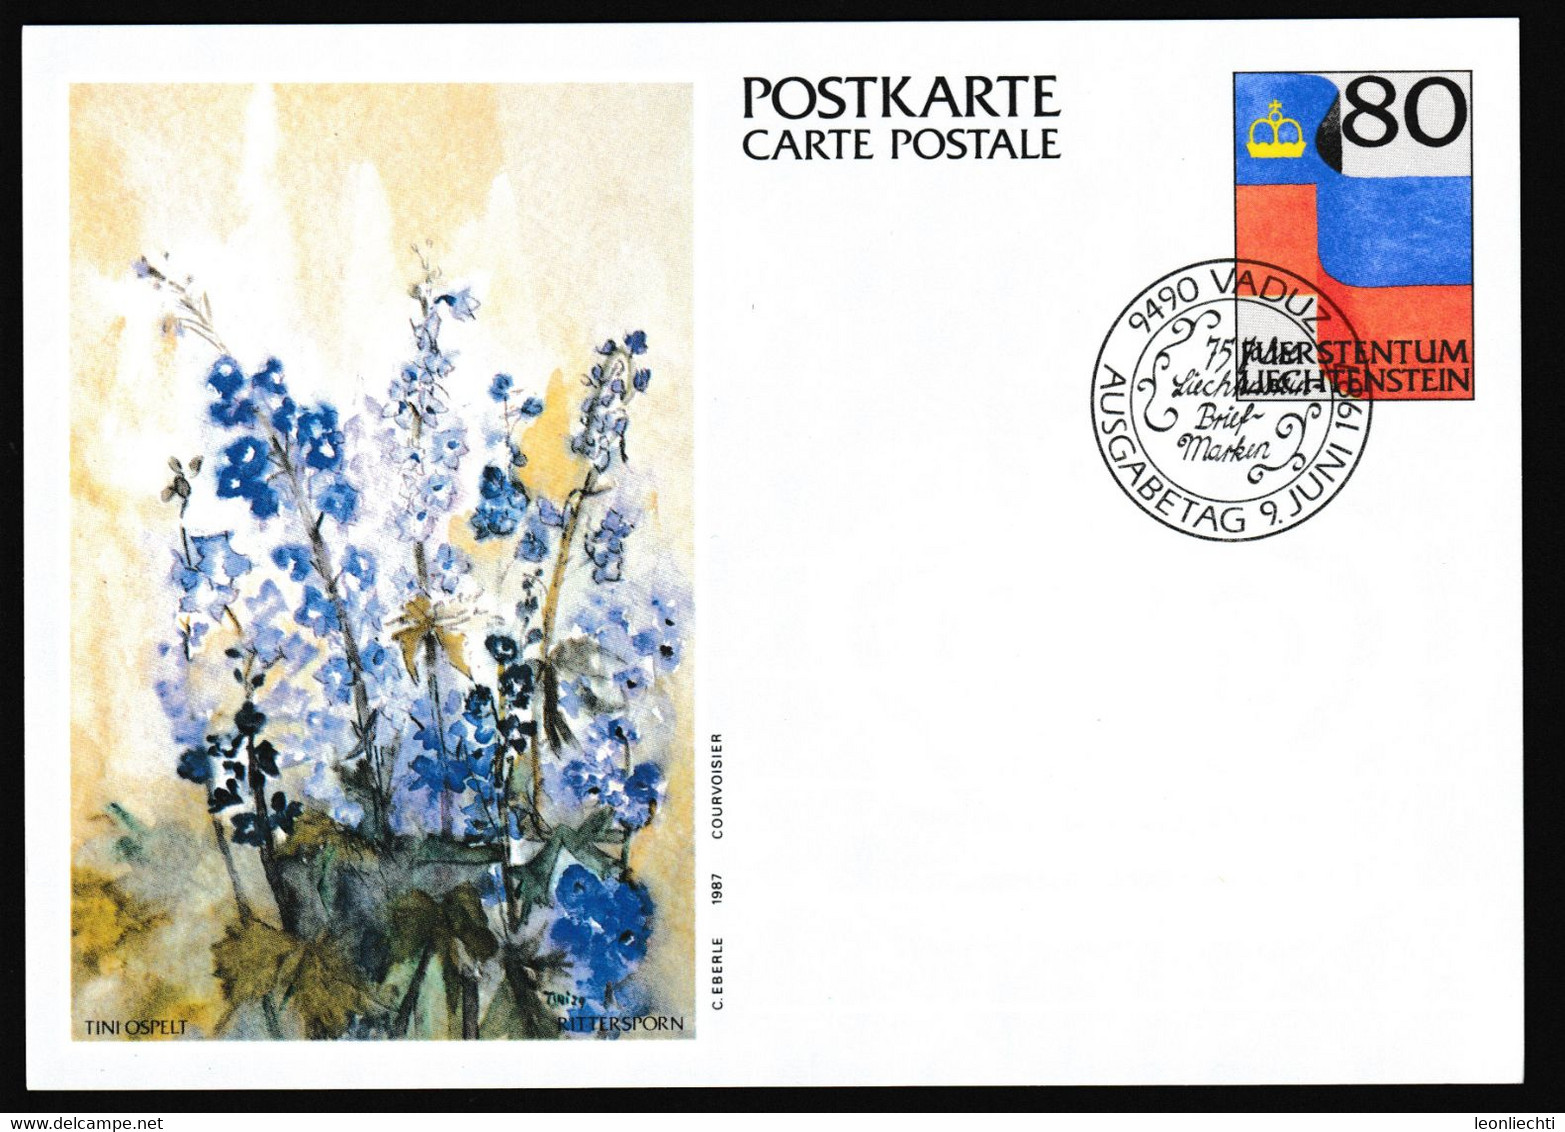 1987 Liechtenstein, Luftpost Carte Postale - Postkarte Ganzsache: Tini Ospelt , Rittersporn - Stamped Stationery